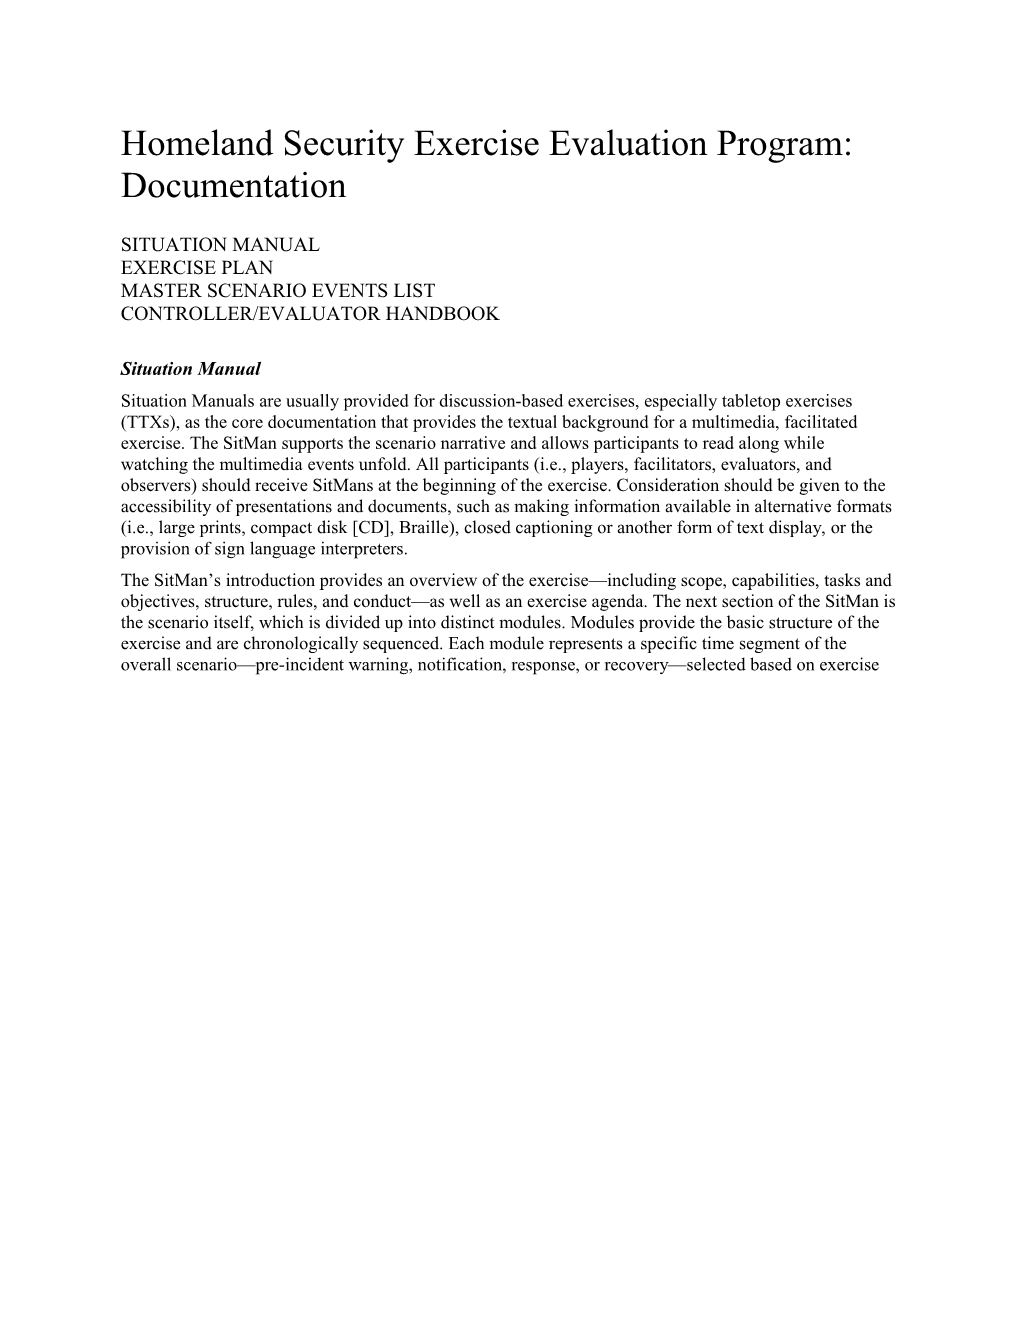 Homeland Security Exercise Evaluation Program: Documentation